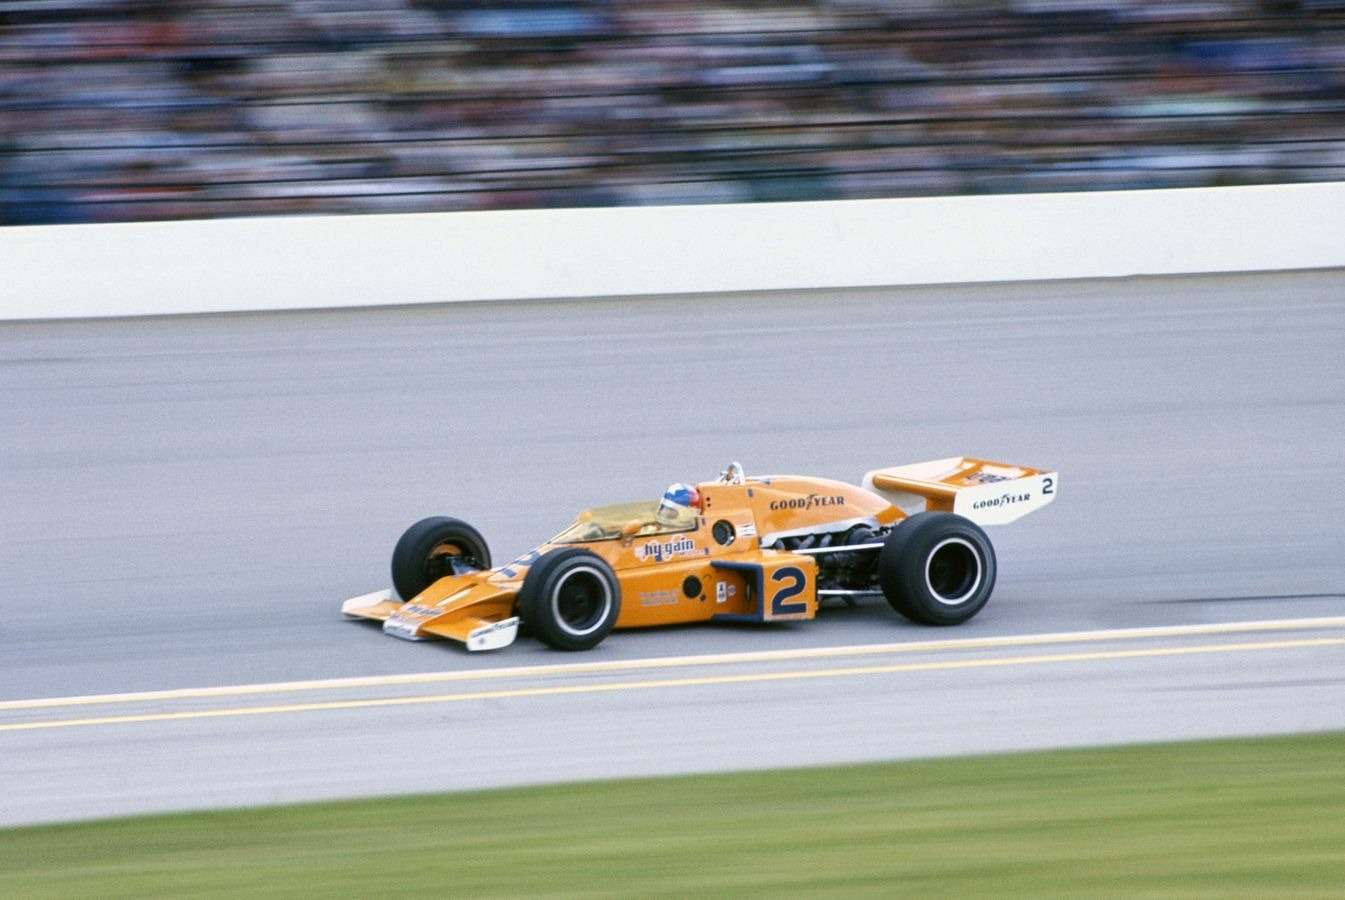 Последний громкий успех McLaren в Indianapolis 500 пришелся на 1976 год, когда гонку выиграл Джонни Разерфорд.